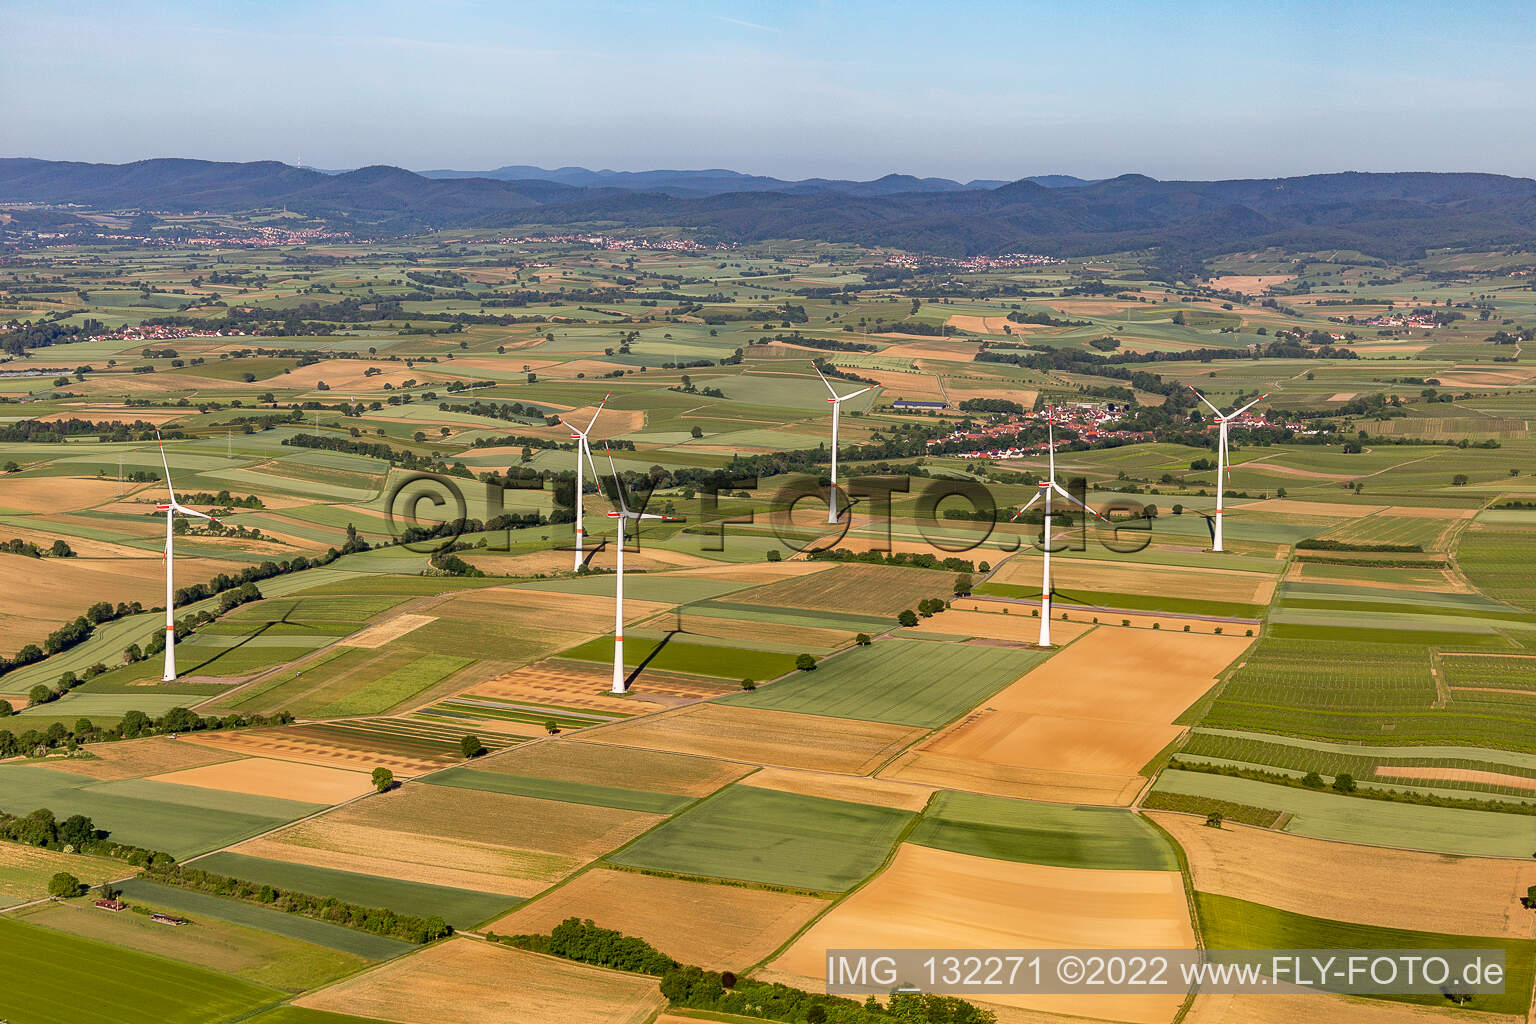 Vue aérienne de Parc éolien Freckenfeld à Freckenfeld dans le département Rhénanie-Palatinat, Allemagne